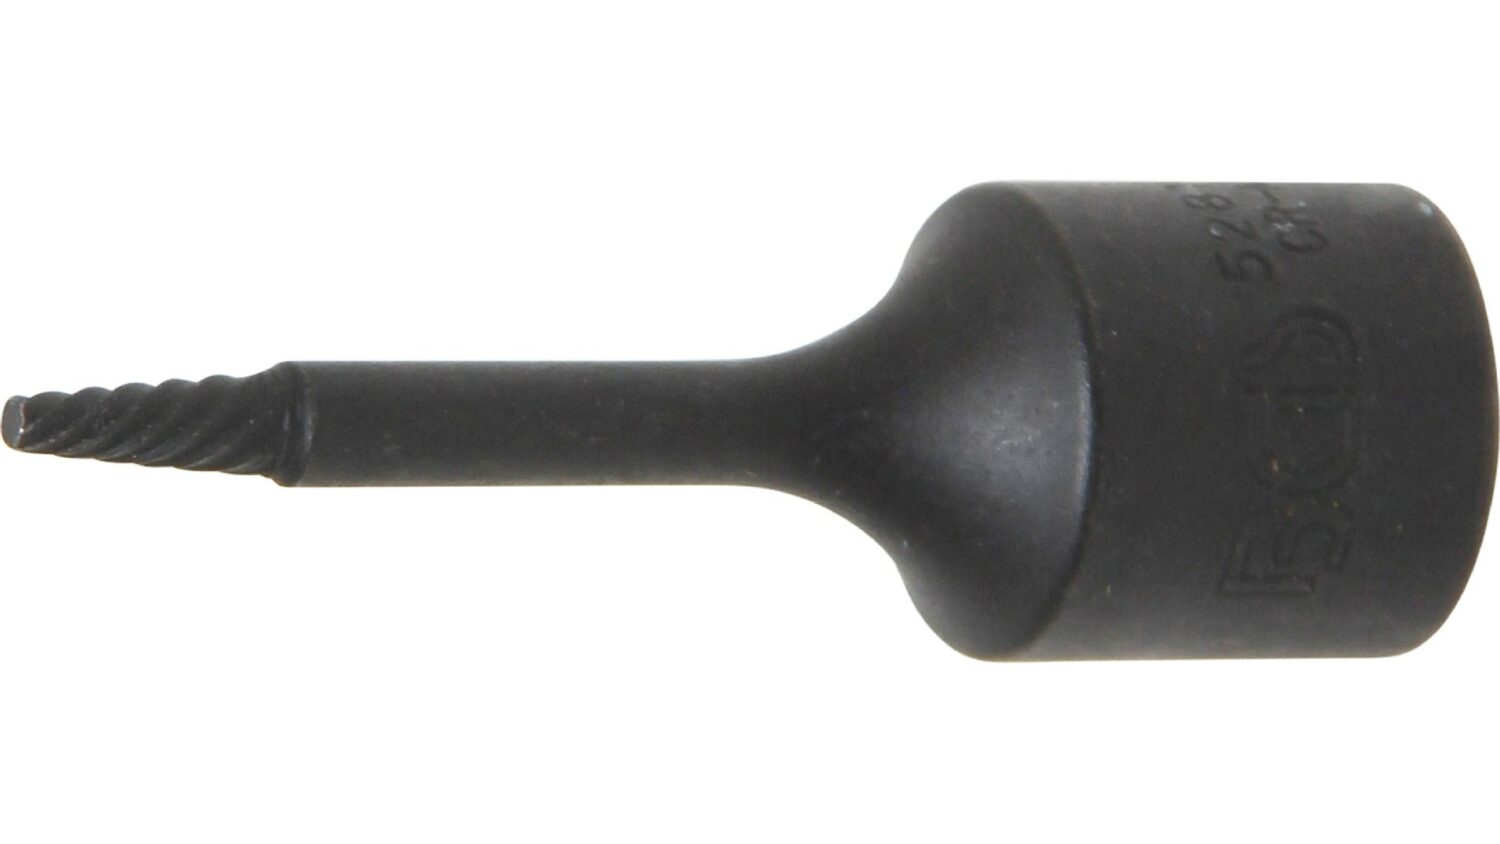 Bild vom BGS 5281-2 Spiral-Profil-Steckschlüssel-Einsatz / Schraubenausdreher | Antrieb Innenvierkant 10 mm (3/8") | 2 mm